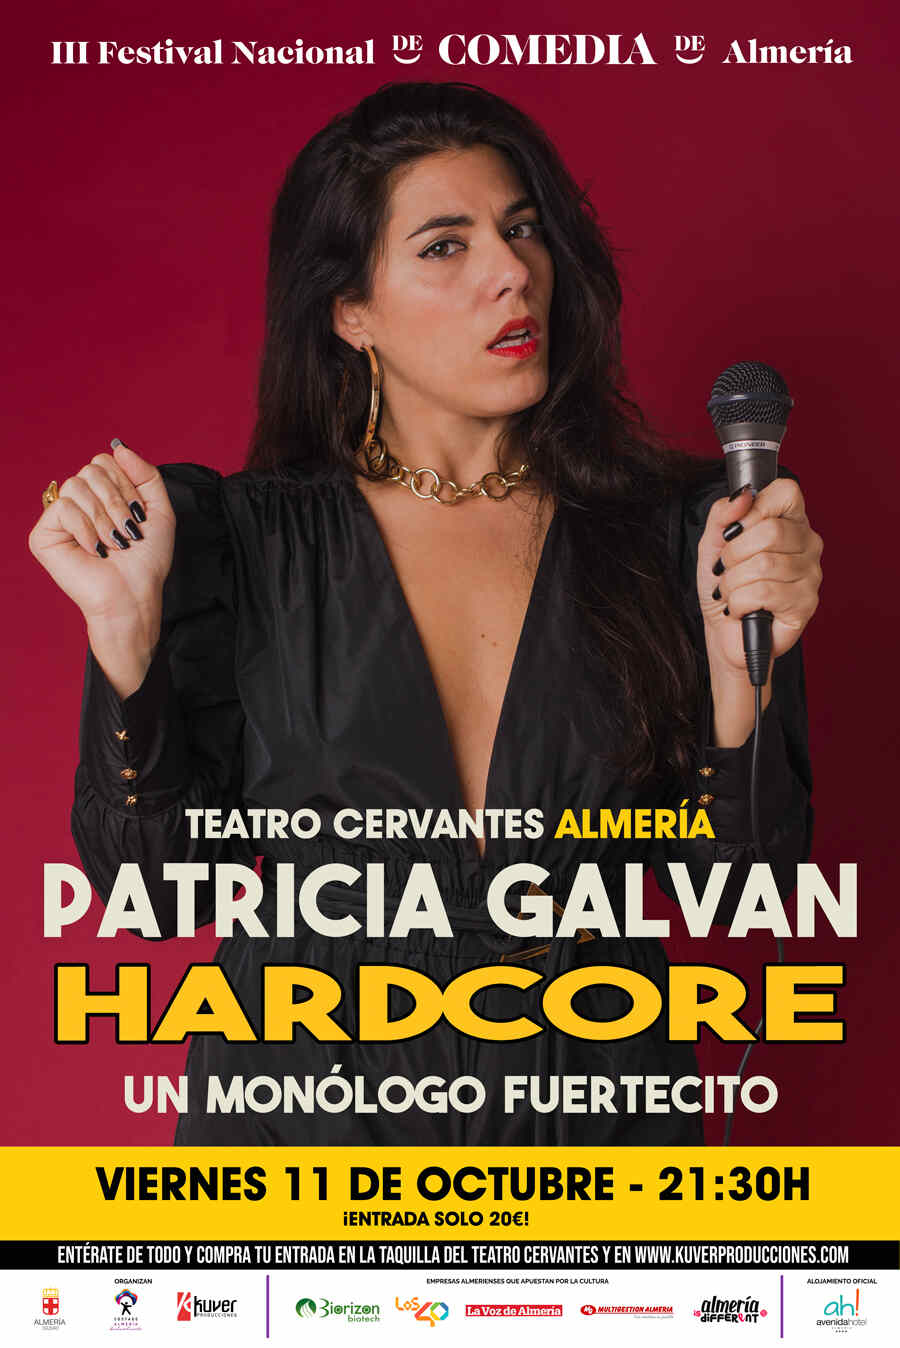 PATRICIA GALVAN